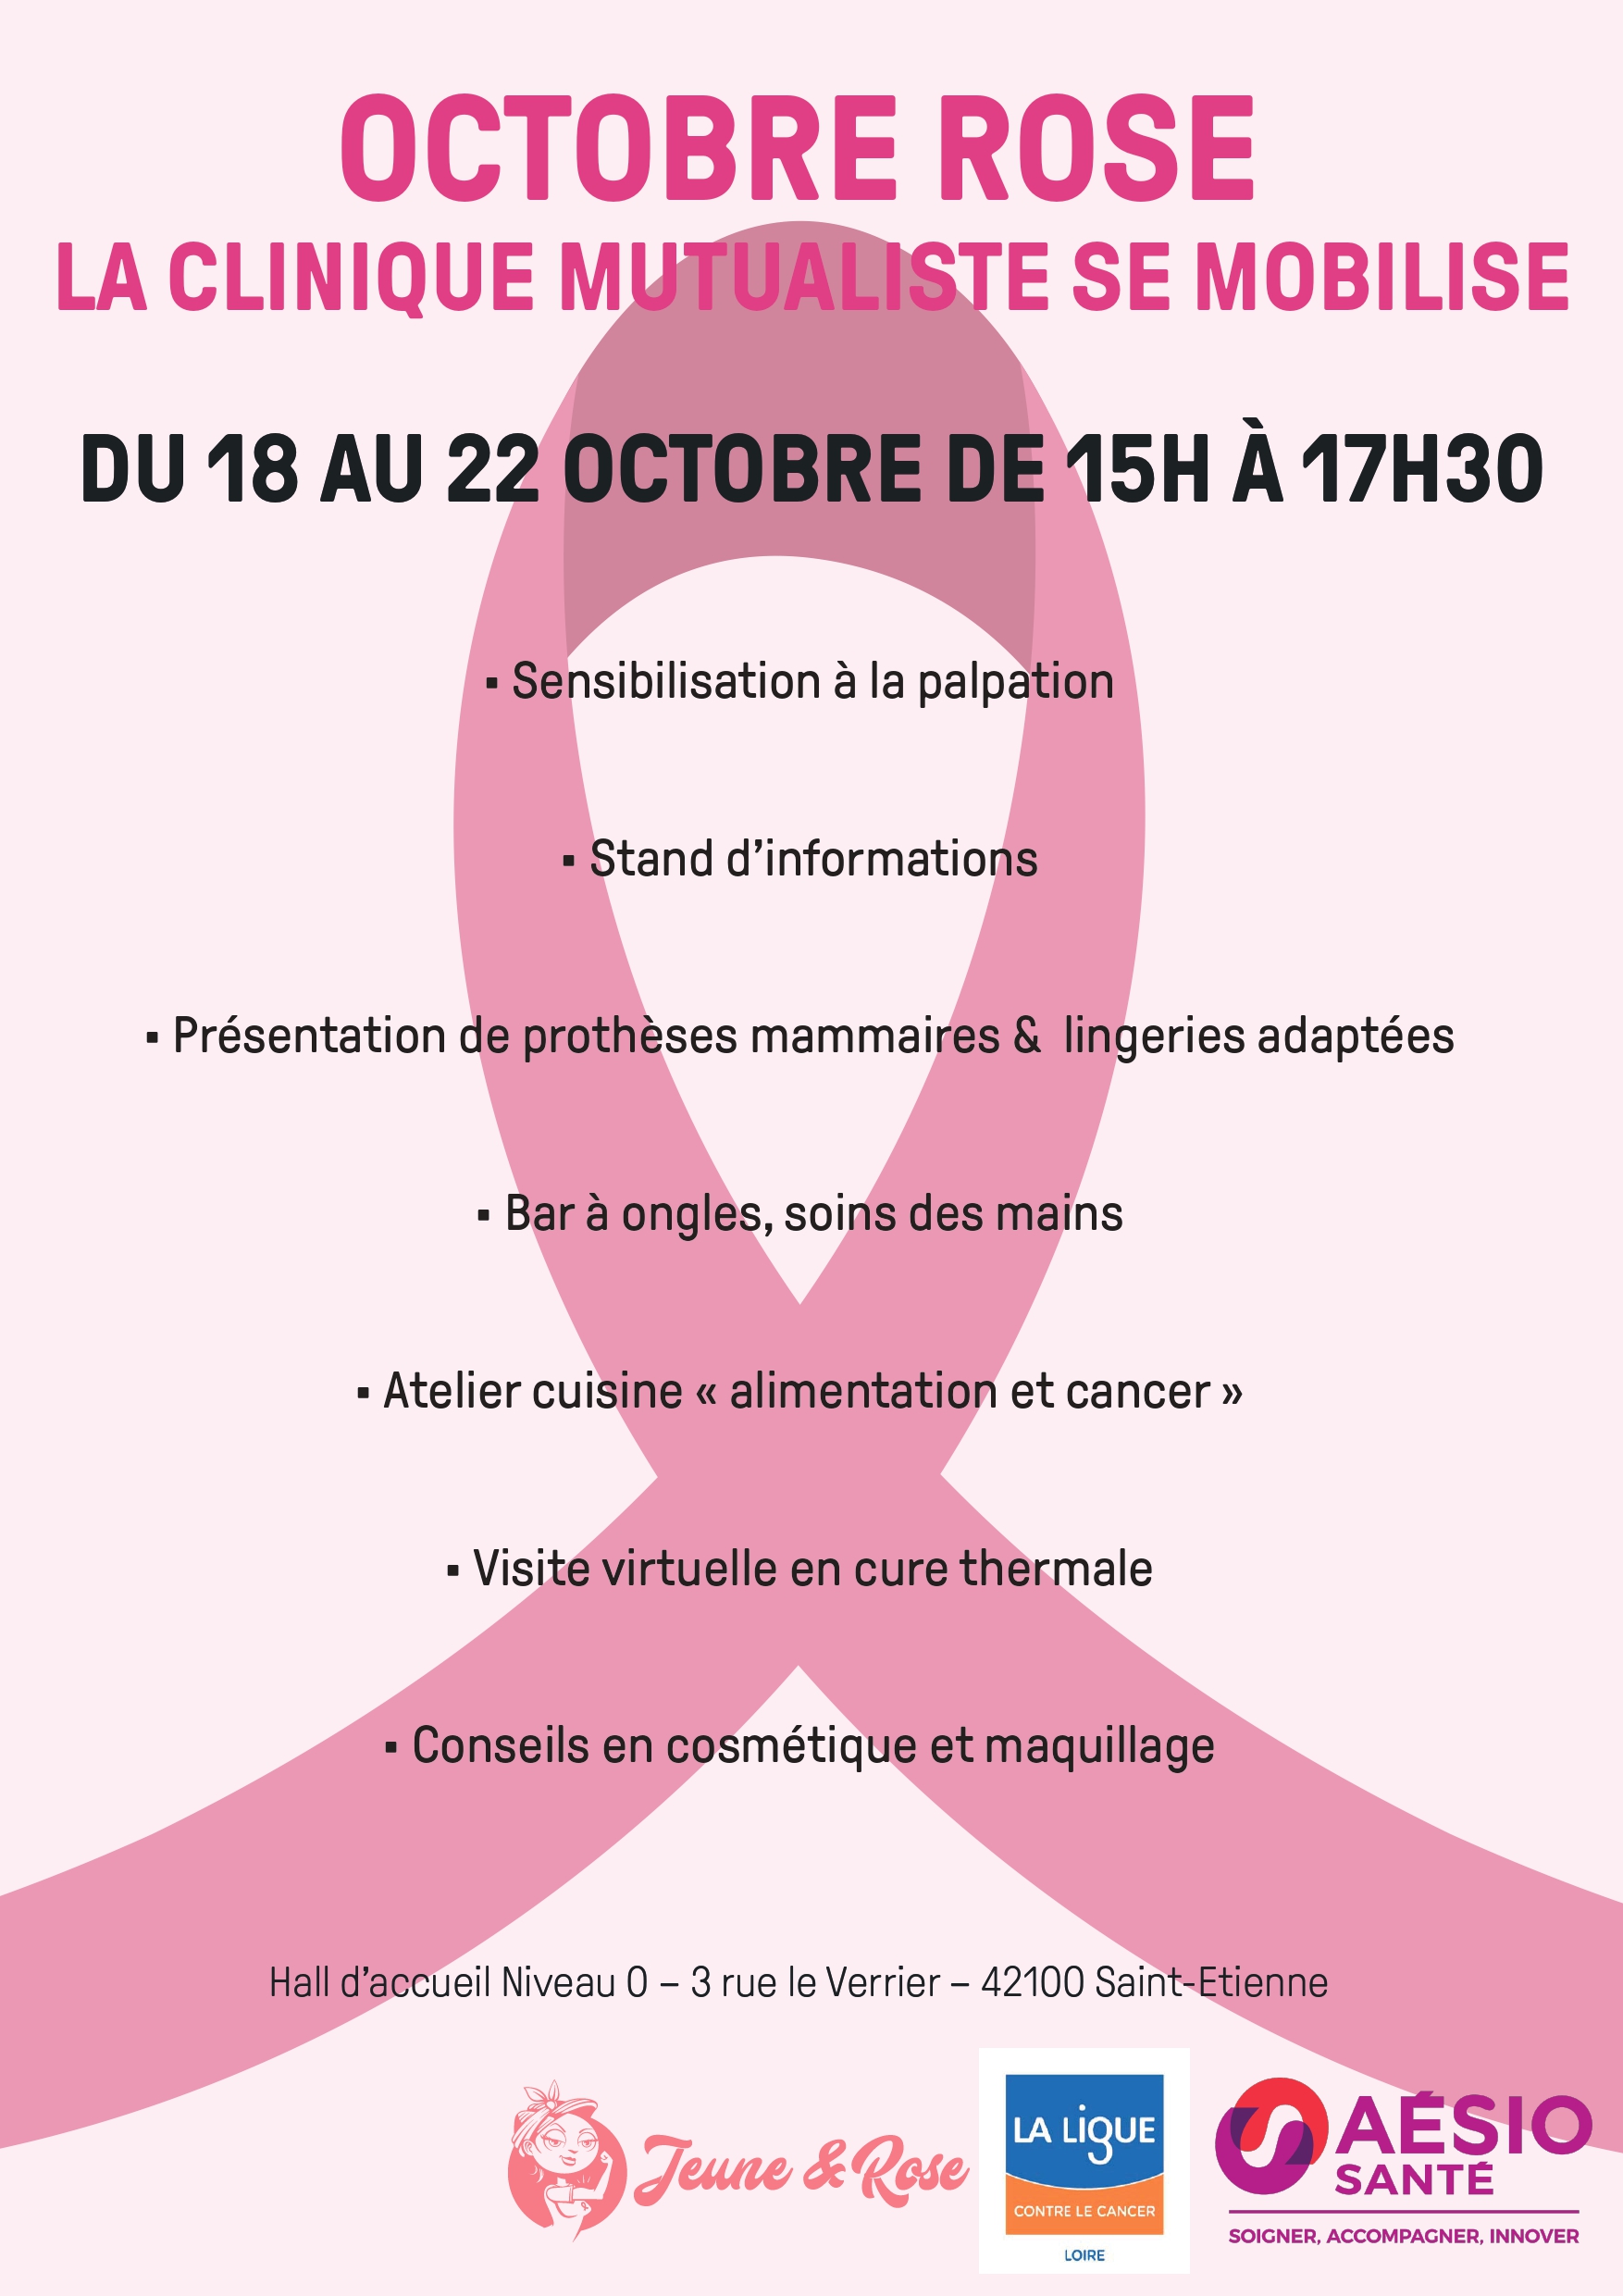 Octobre Rose 2021 - La Clinique Mutualiste AÉSIO Santé se mobilise